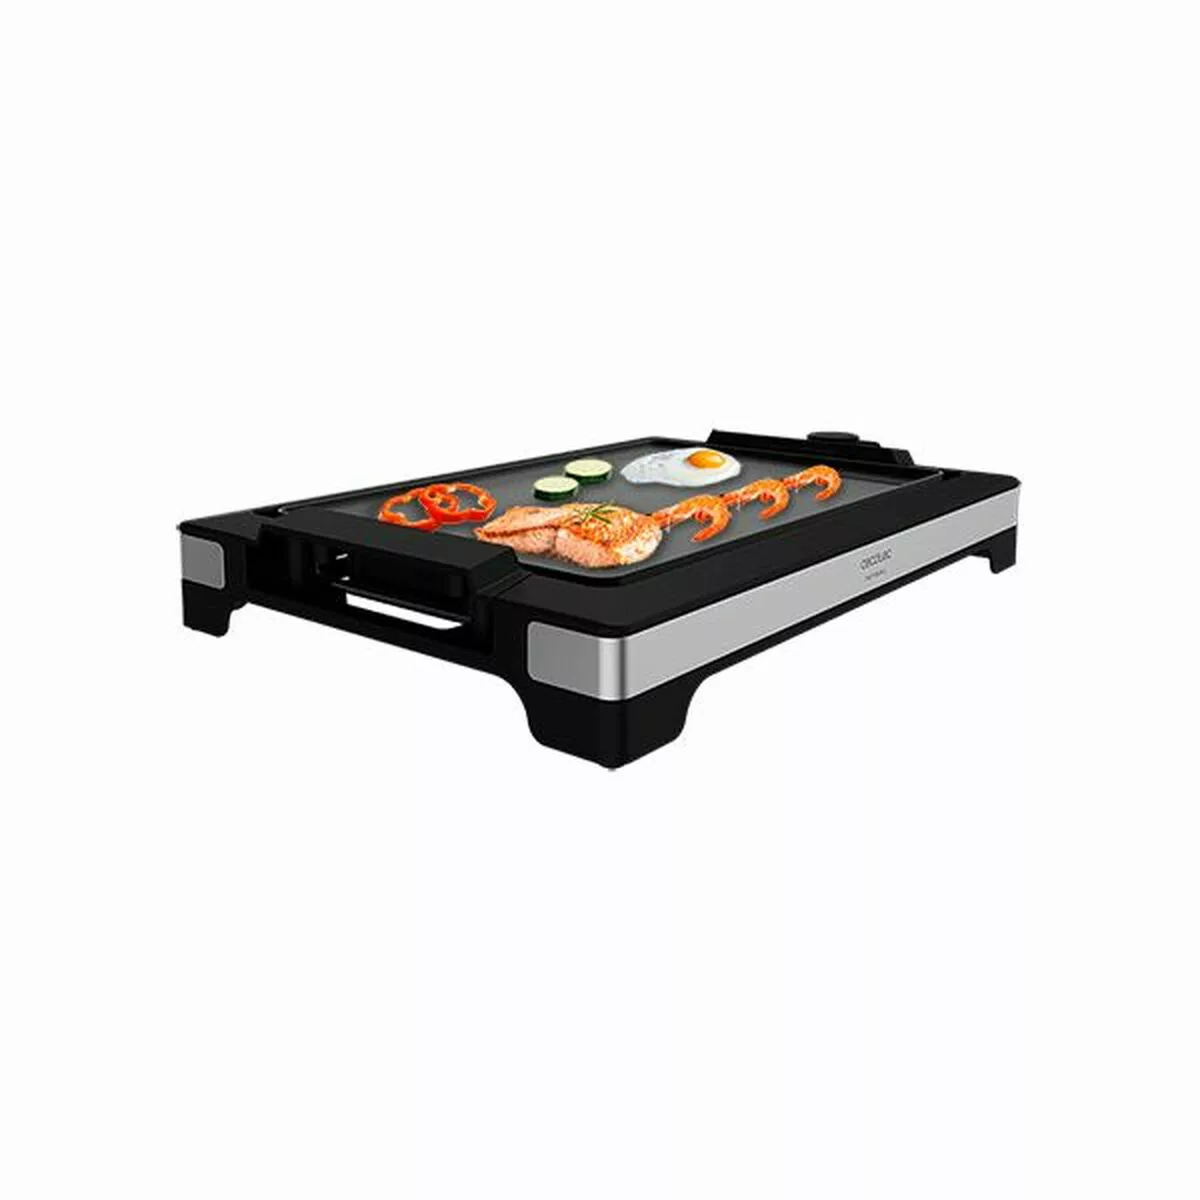 Grillpfanne Tasty&grill 2000 Inox Cecotec 2000 W günstig online kaufen